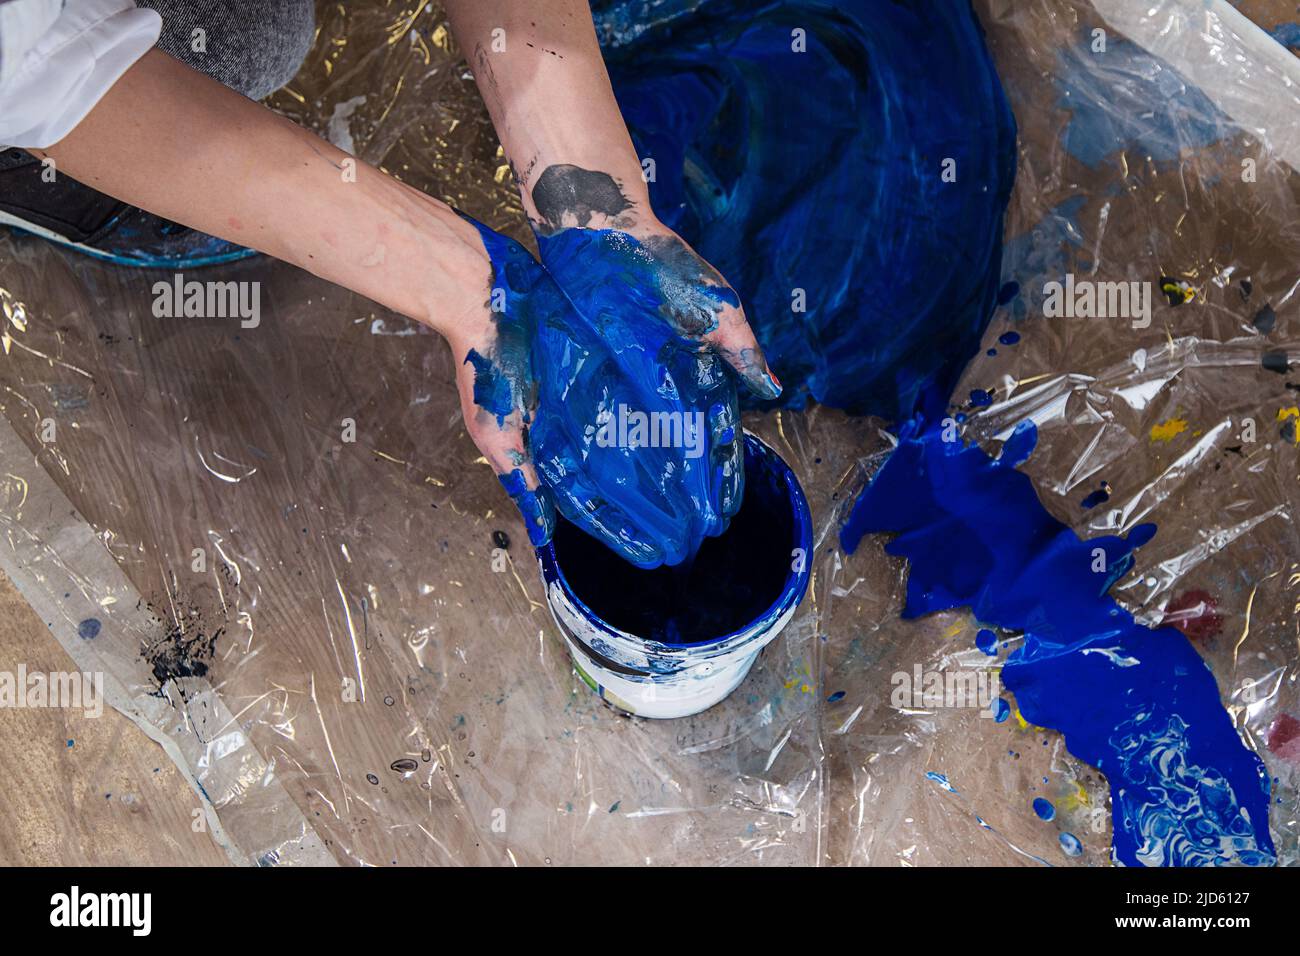 Foto ritagliata di mani piegate di donna macchiate con vernice blu sopra secchio su pellicola trasparente ricoperta da spruzzi. Foto Stock